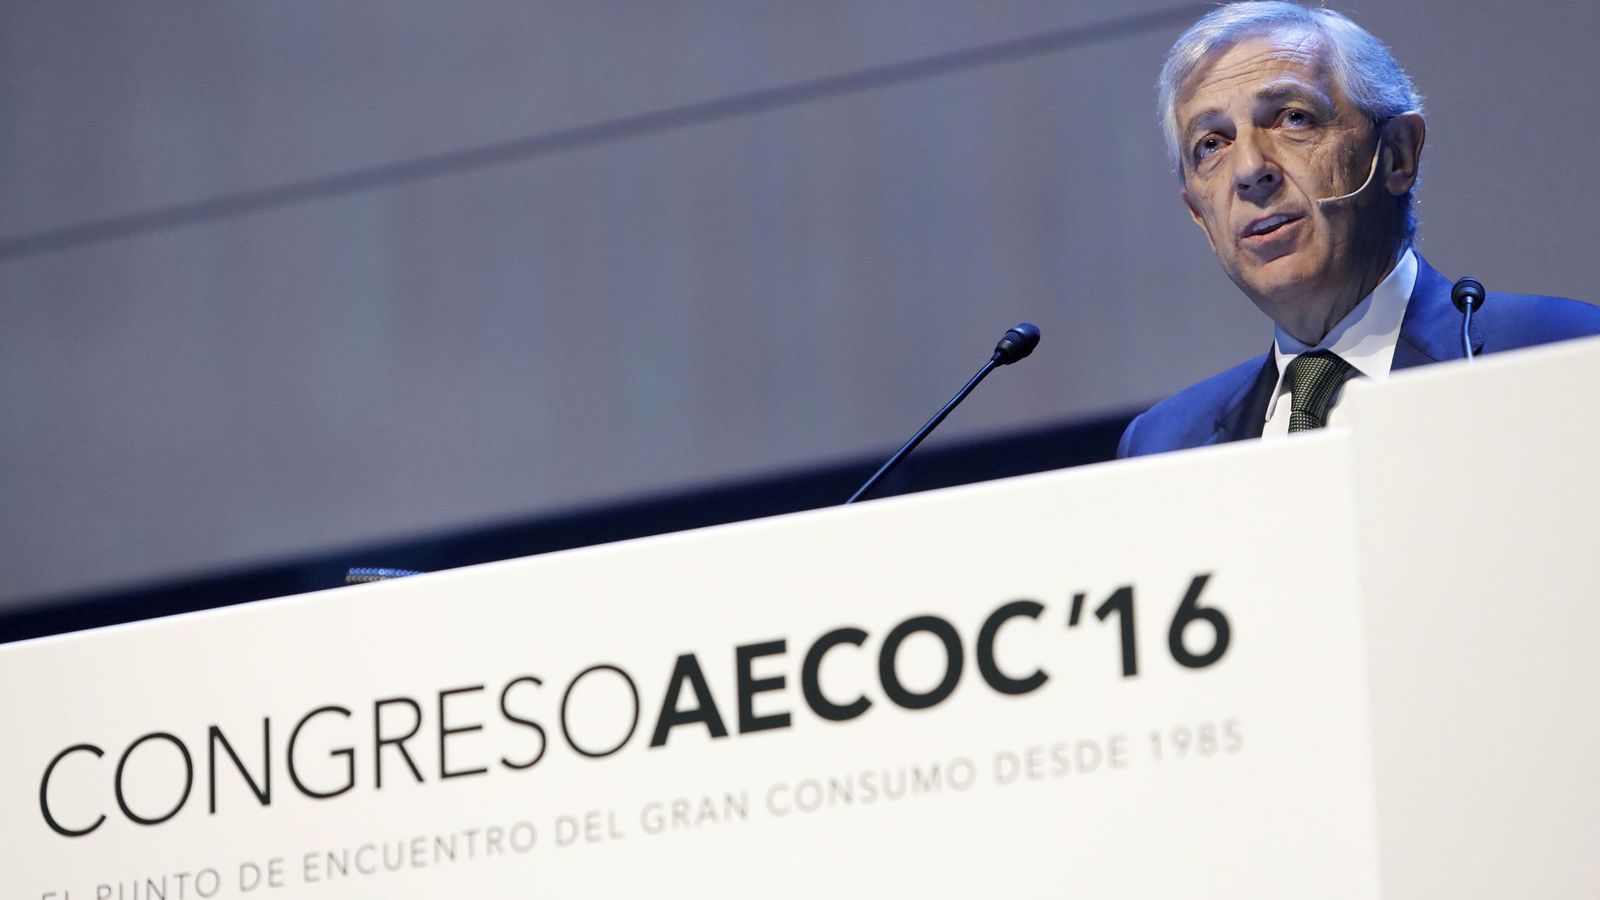 Foto: El presidente de AECOC, Javier Campo, durante su intervención ayer en el 31º Congreso de Gran Consumo de AECOC. (EFE)